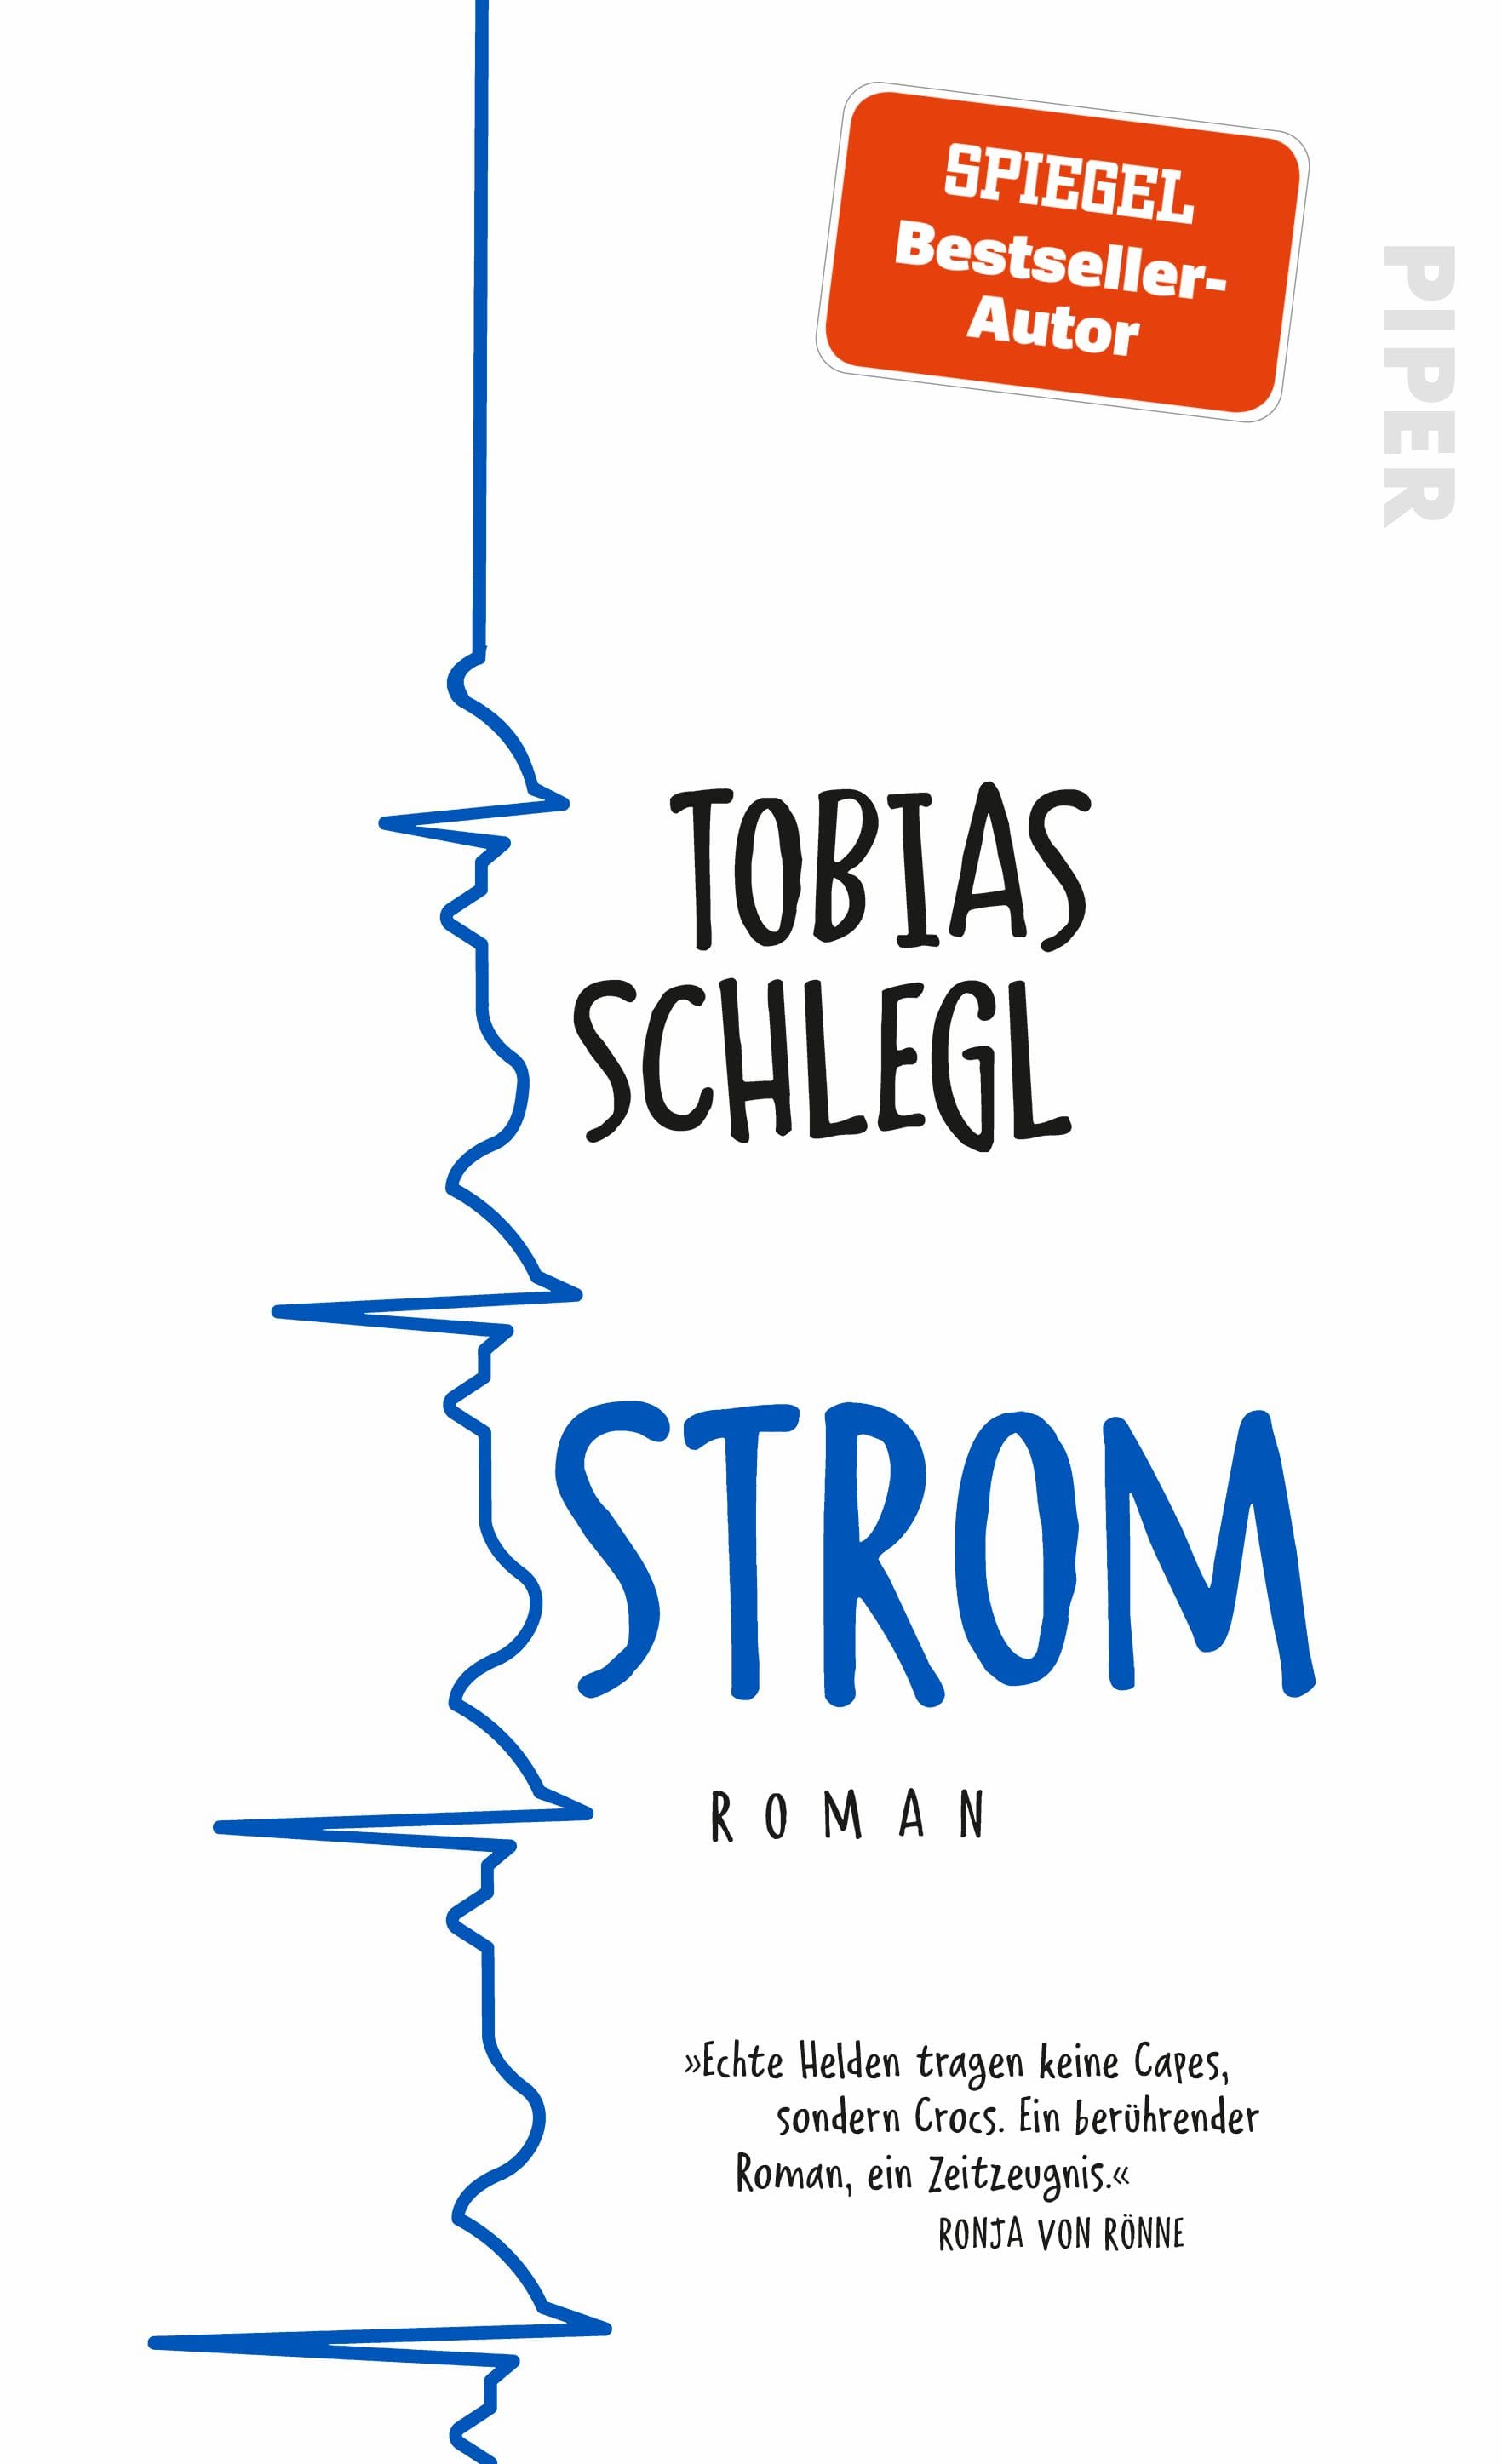 Cover von Roman "Strom" von Tobias Schlegl